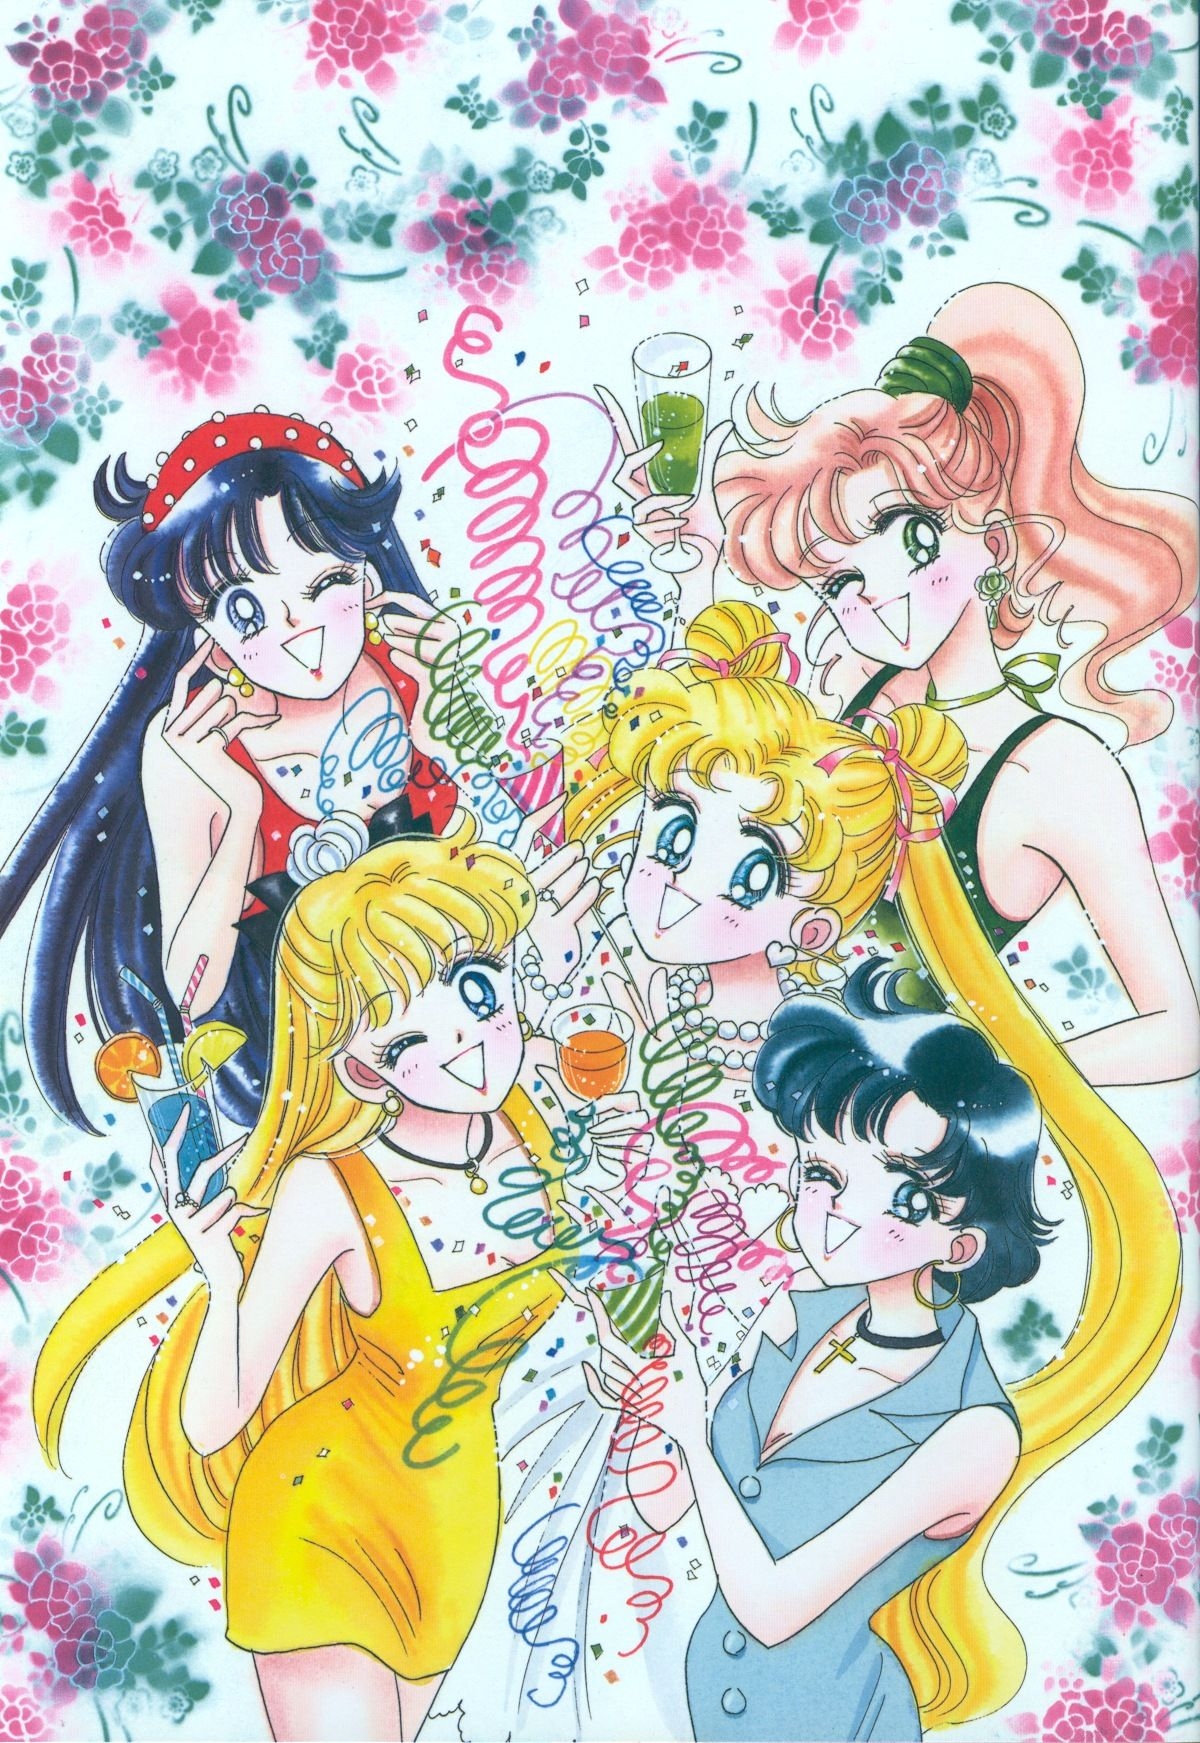 [Takeuchi Naoko] Bishoujo Senshi Sailormoon Gengashuu Vol.II (Sailor Moon) 46